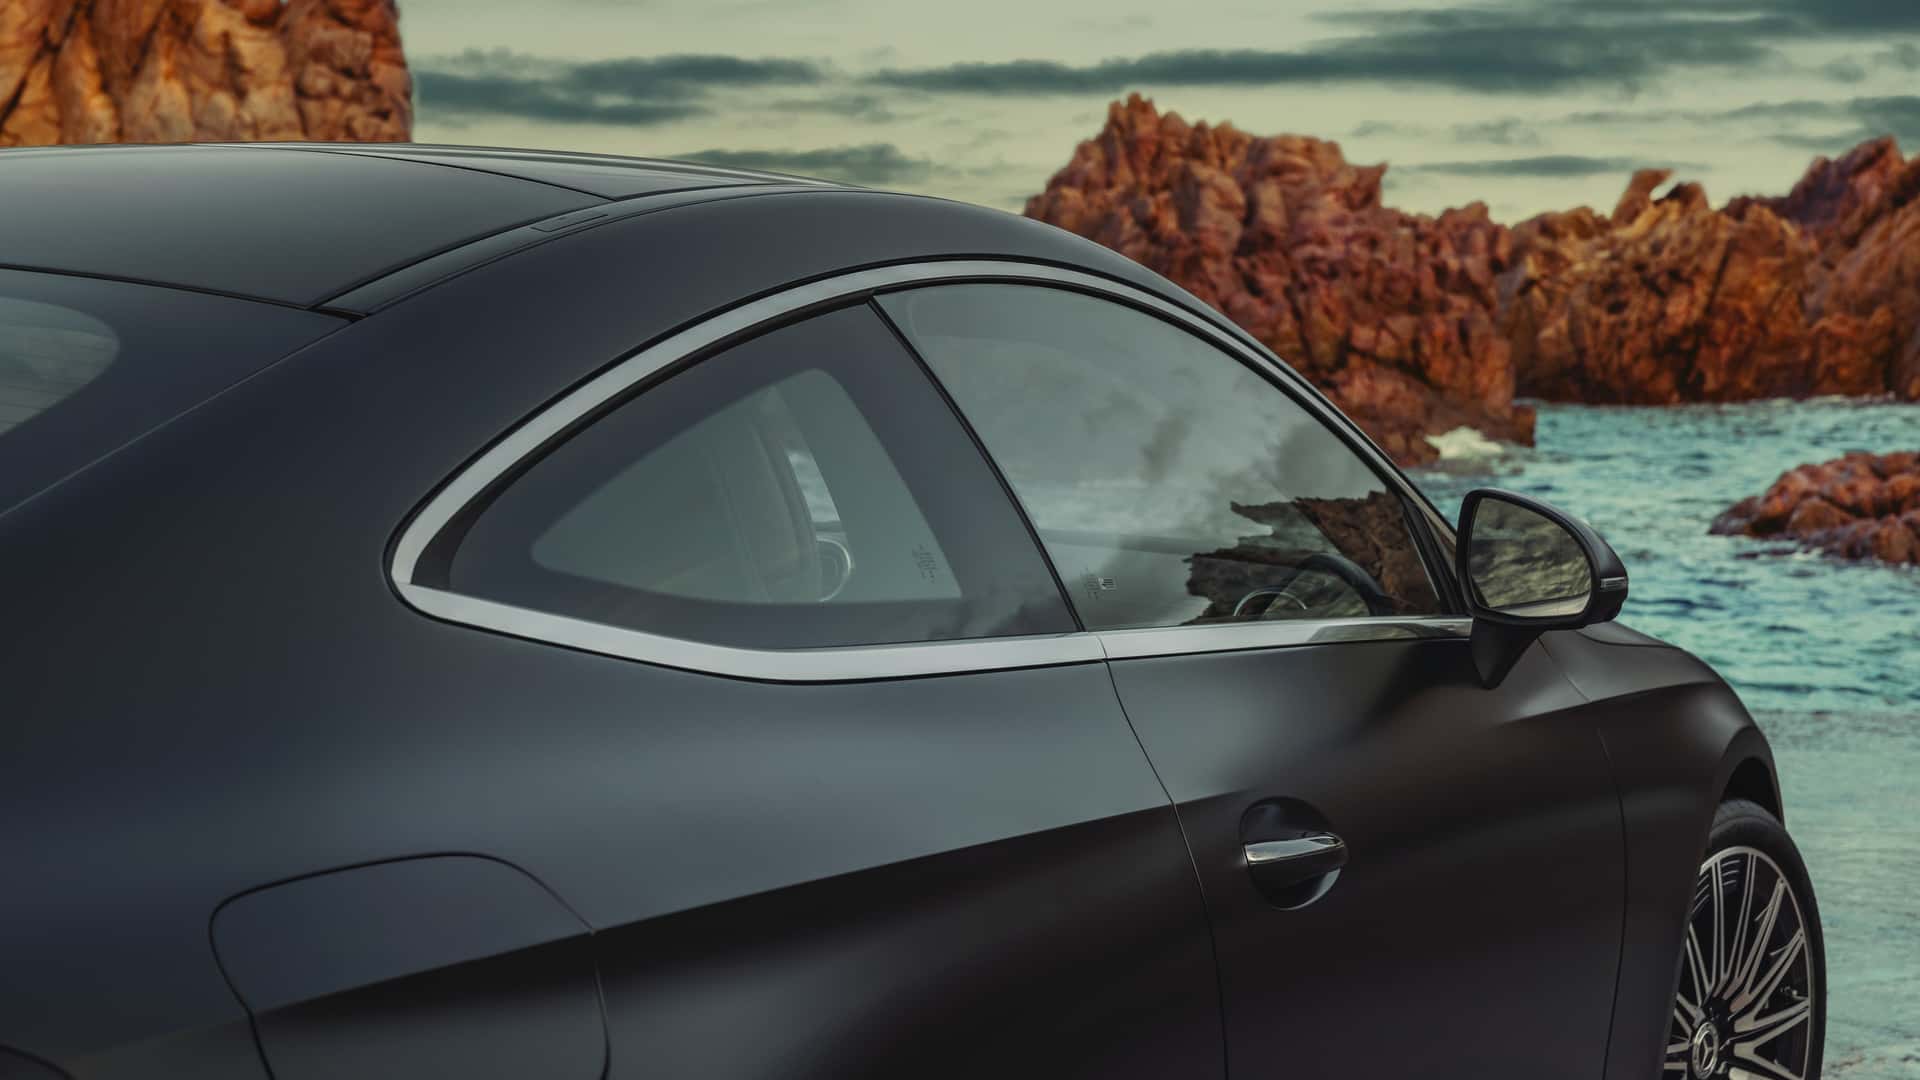 2024 Mercedes CLE Coupe tanıtıldı: İki kapılı coupe rekabetinde taze kan